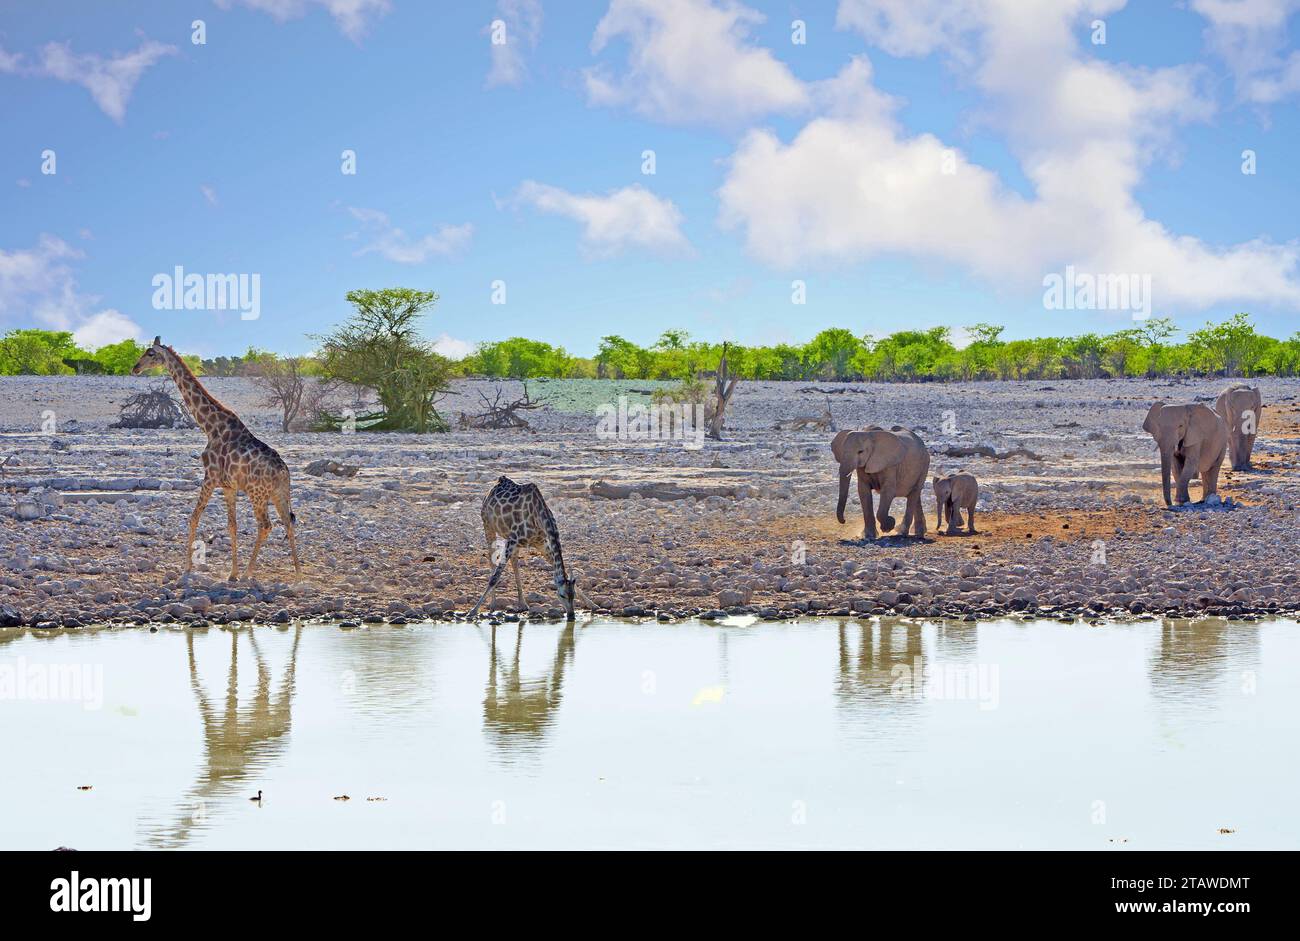 Mandria di elefanti che vengono a bere in una pozza d'acqua mentre due giraffe sono già lì. Foto Stock